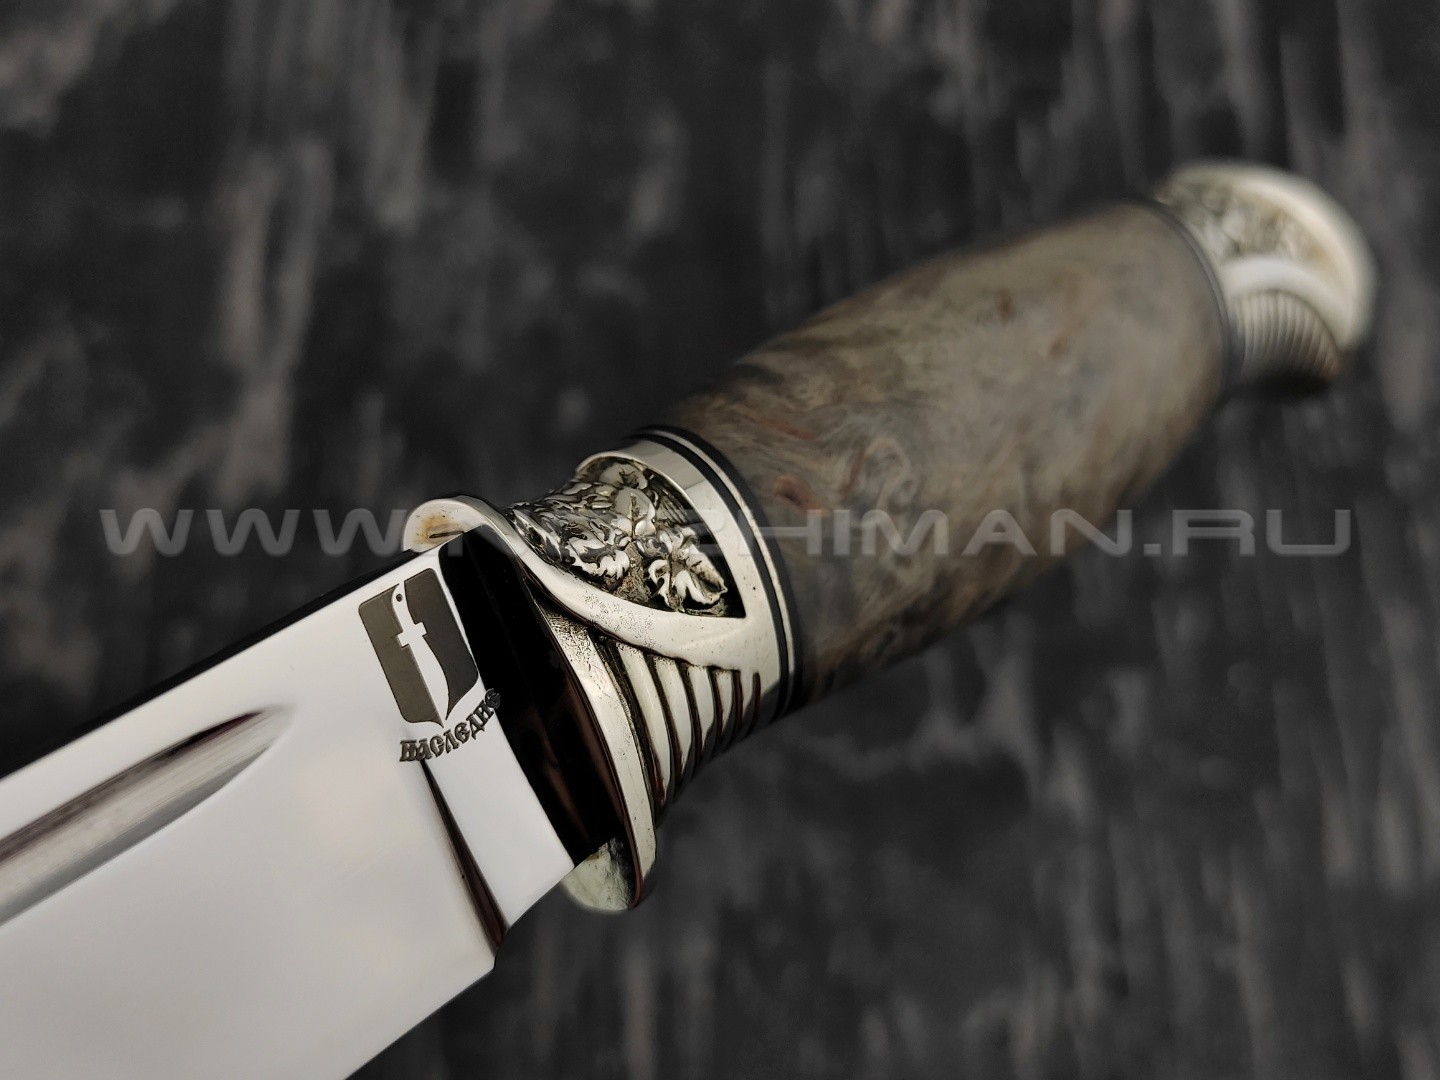 Нож "Финский" сталь 110Х18, рукоять карельская береза (Наследие)